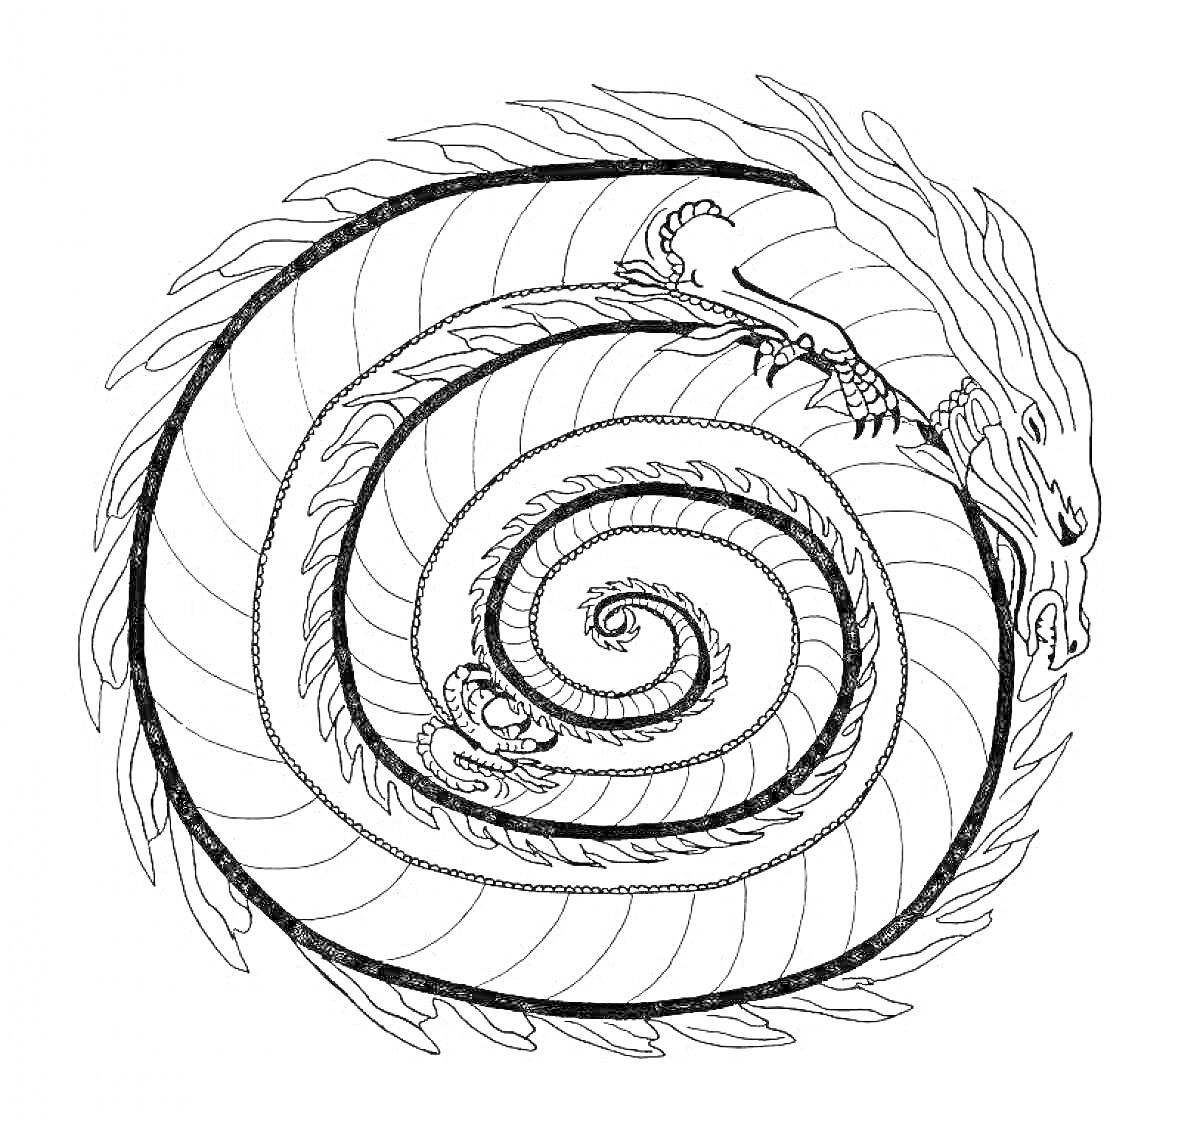 Раскраска Спиральный дракон с узорами по телу и деталями на хвосте, грива из огня, чешуя, большие когти и хвост